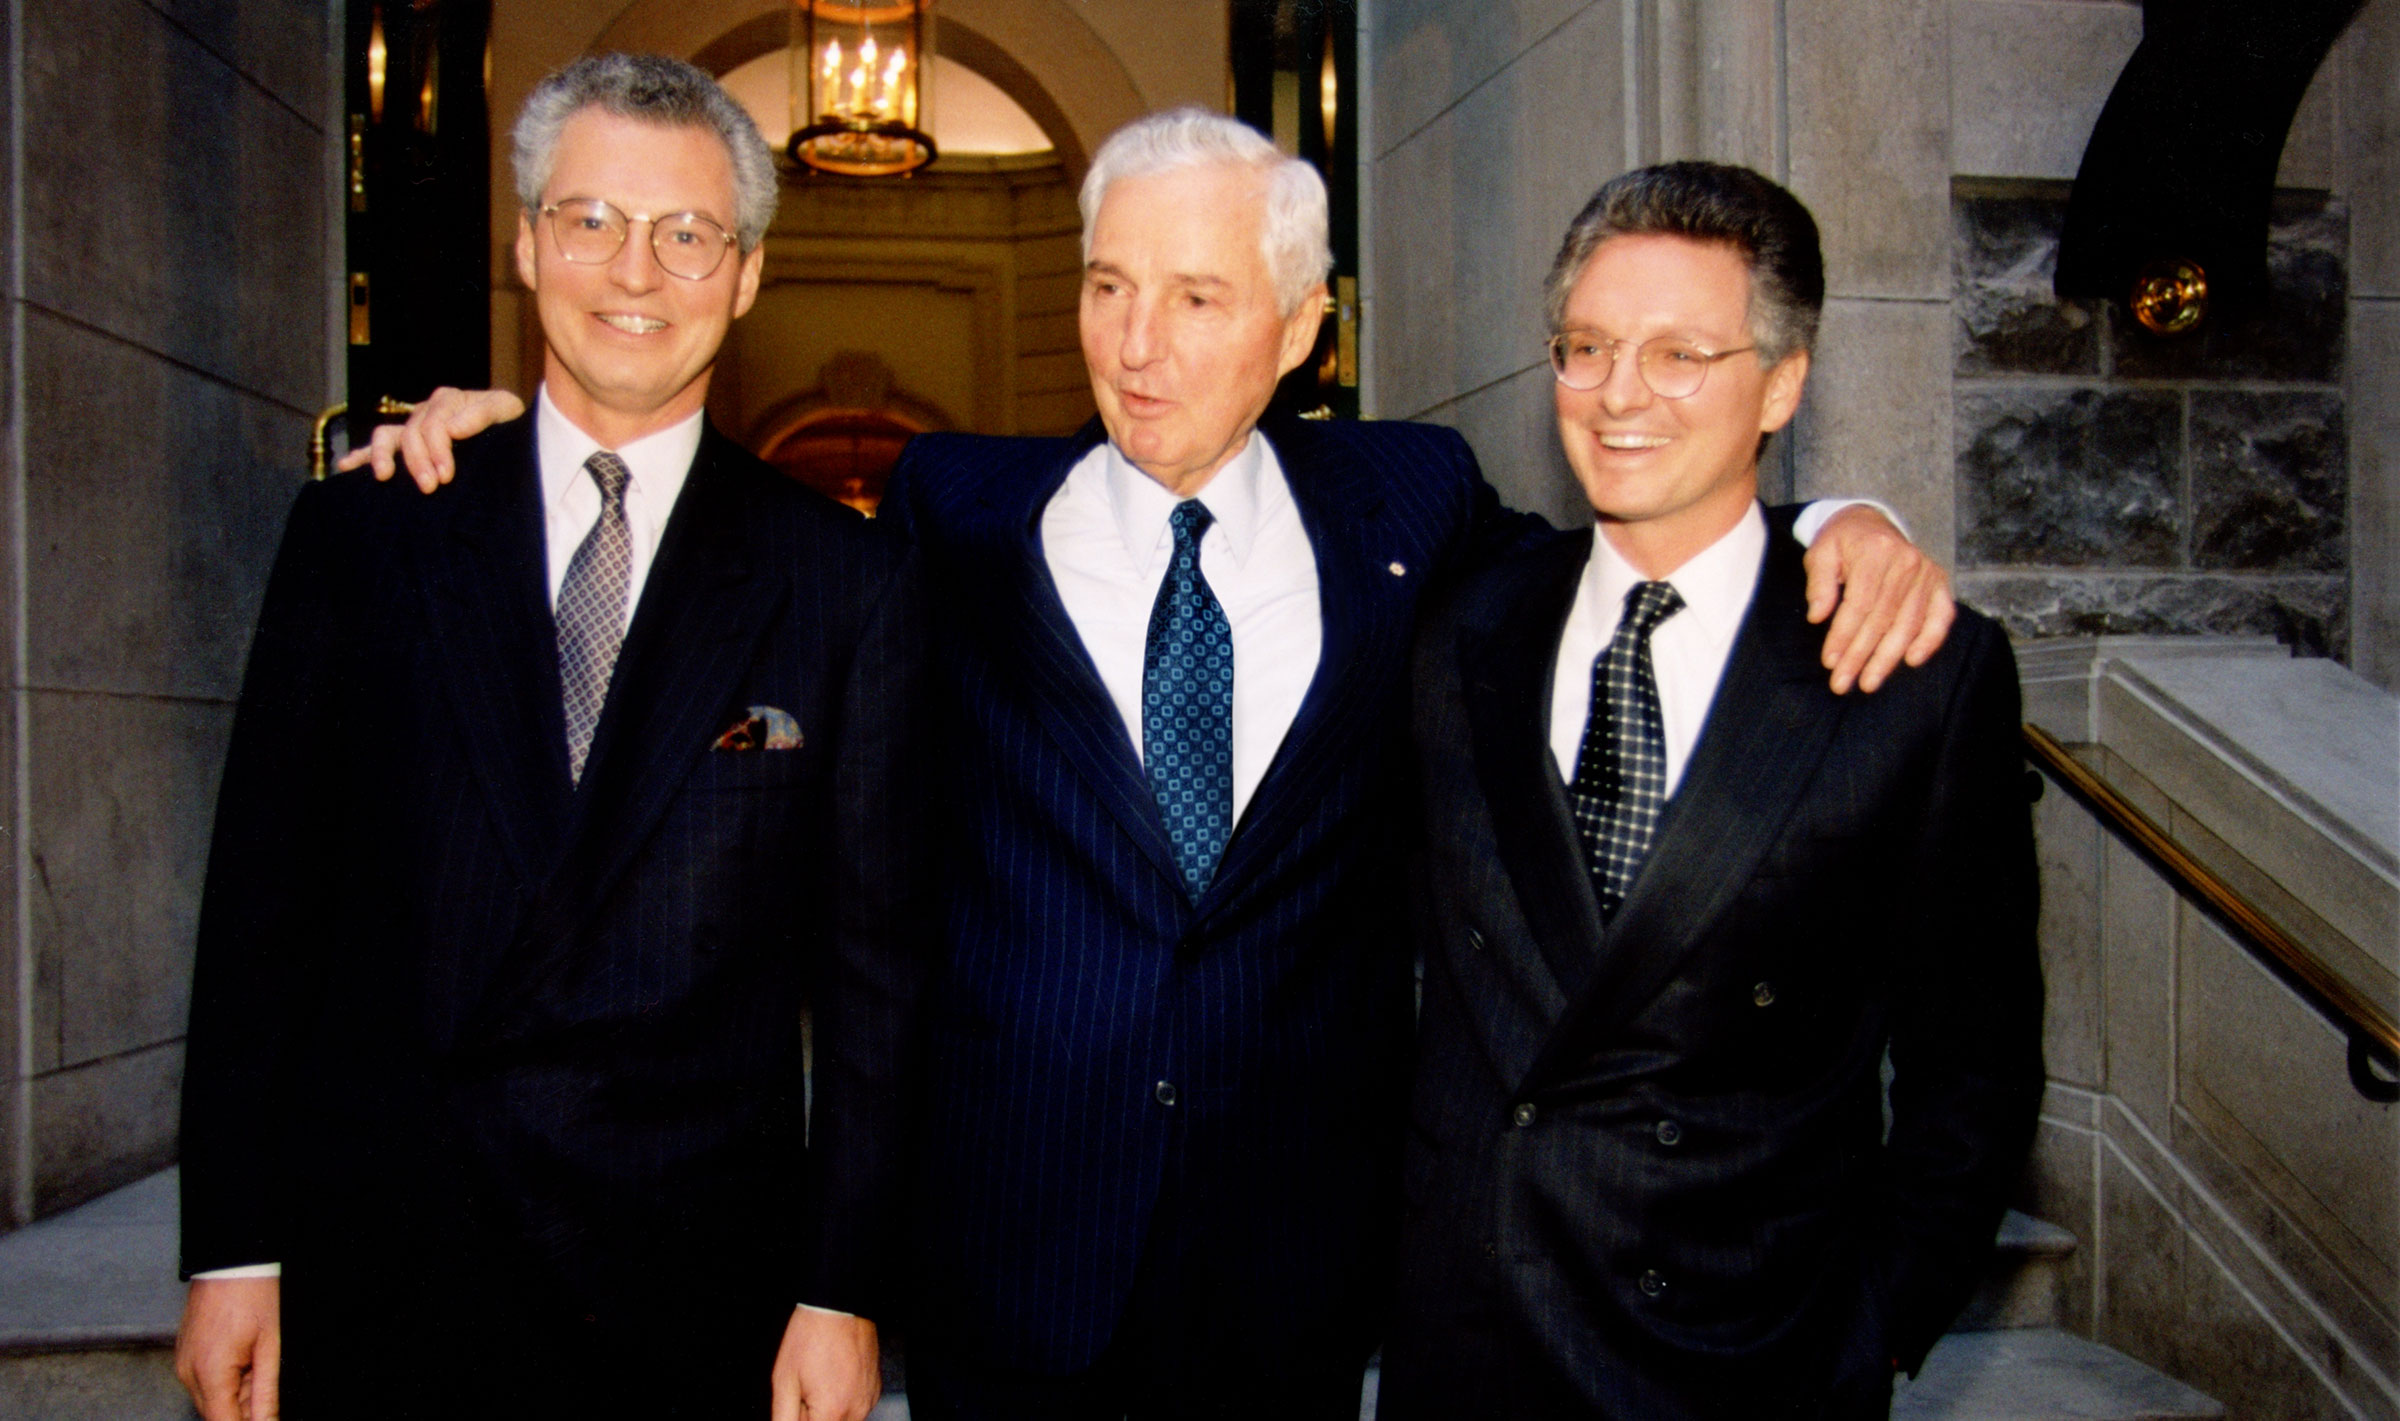 From left, André Desmarais, Paul Desmarais and Paul Desmarais, Jr. at the 1996 Annual Meeting of Power Corporation.